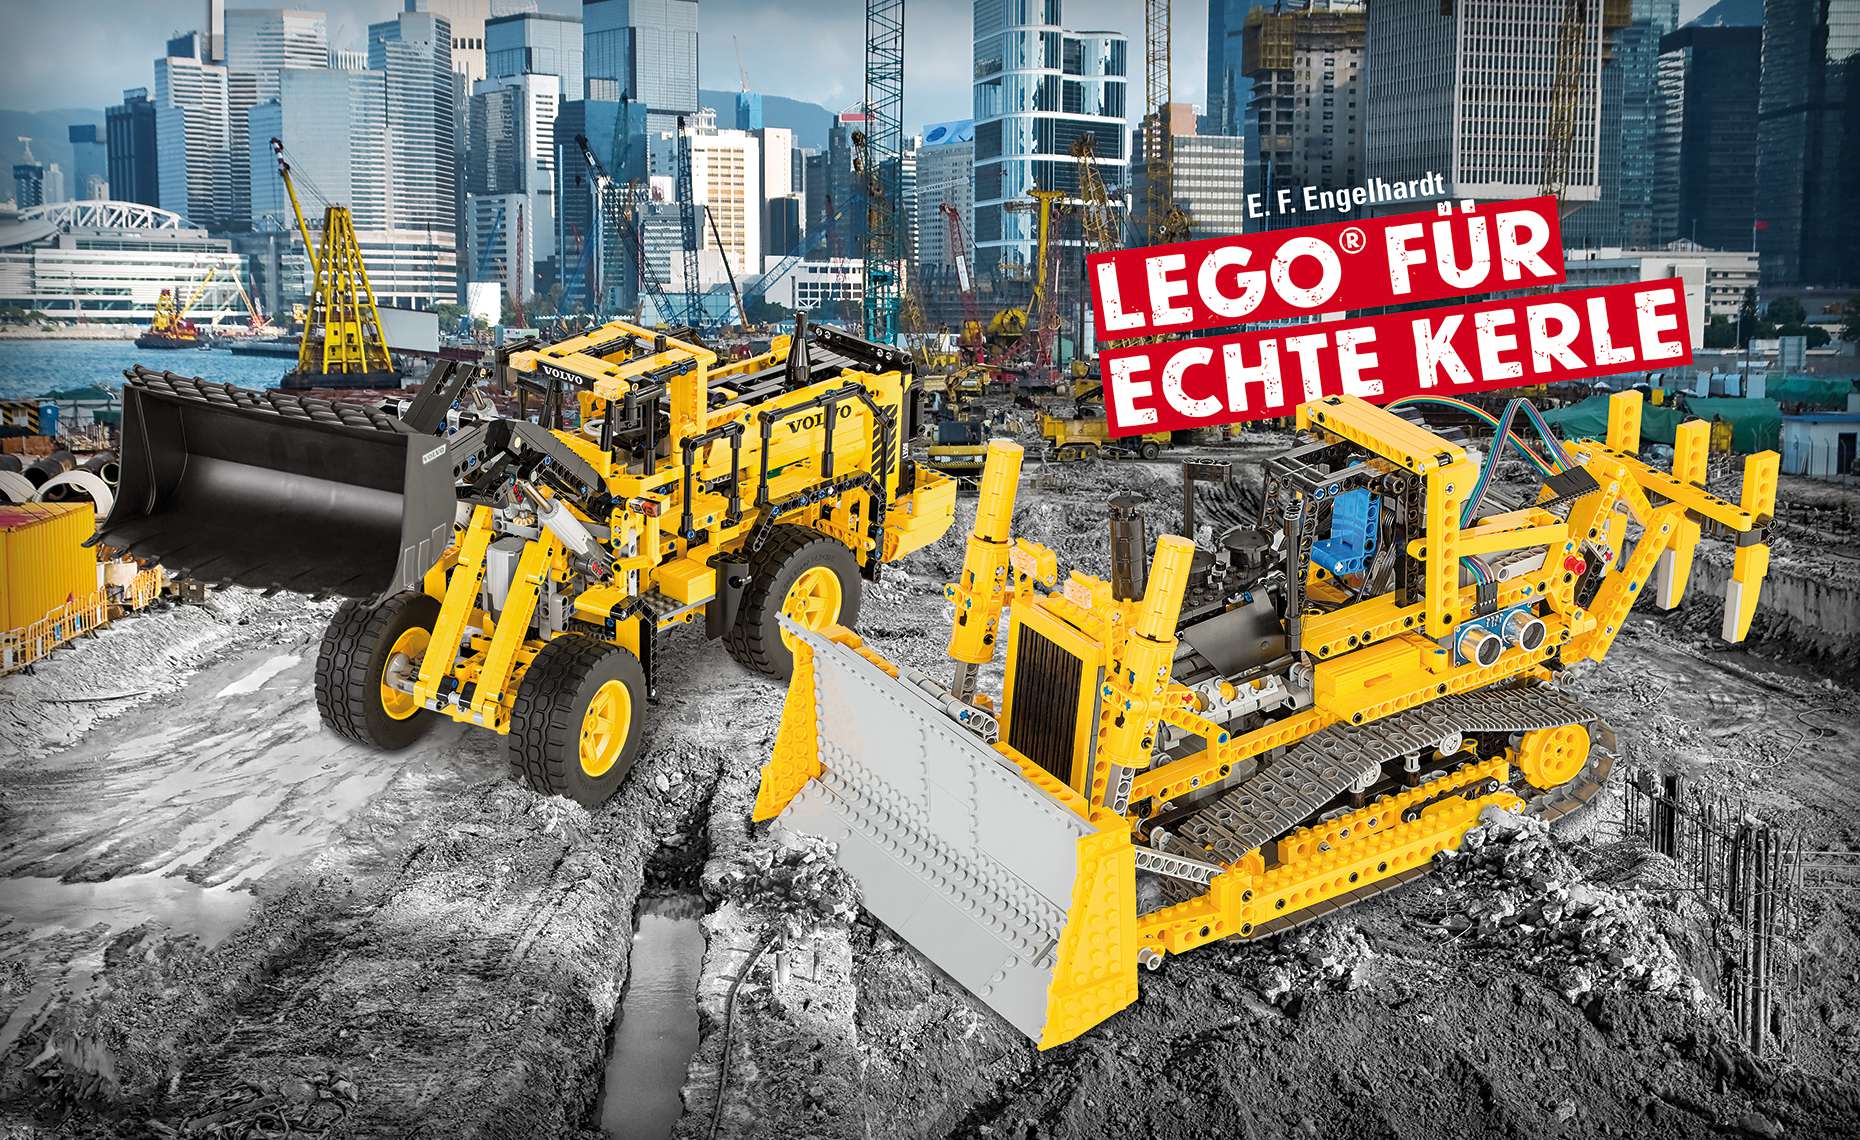 LEGO® für echte Kerle - Buchdesigner München